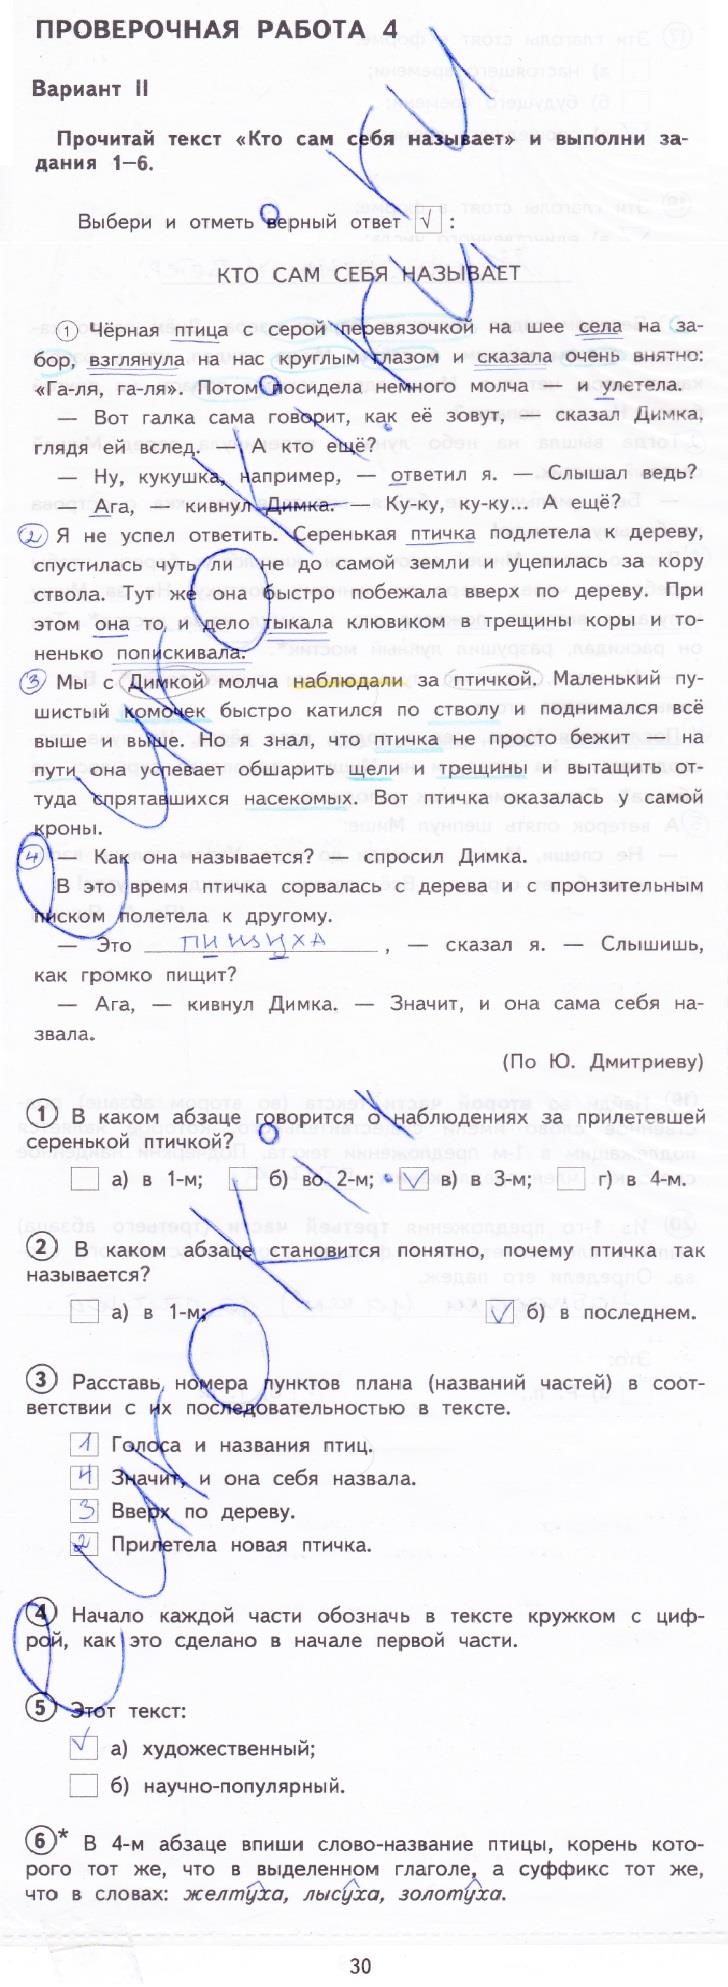 гдз 4 класс тетрадь для проверочных работ страница 26 русский язык Лаврова